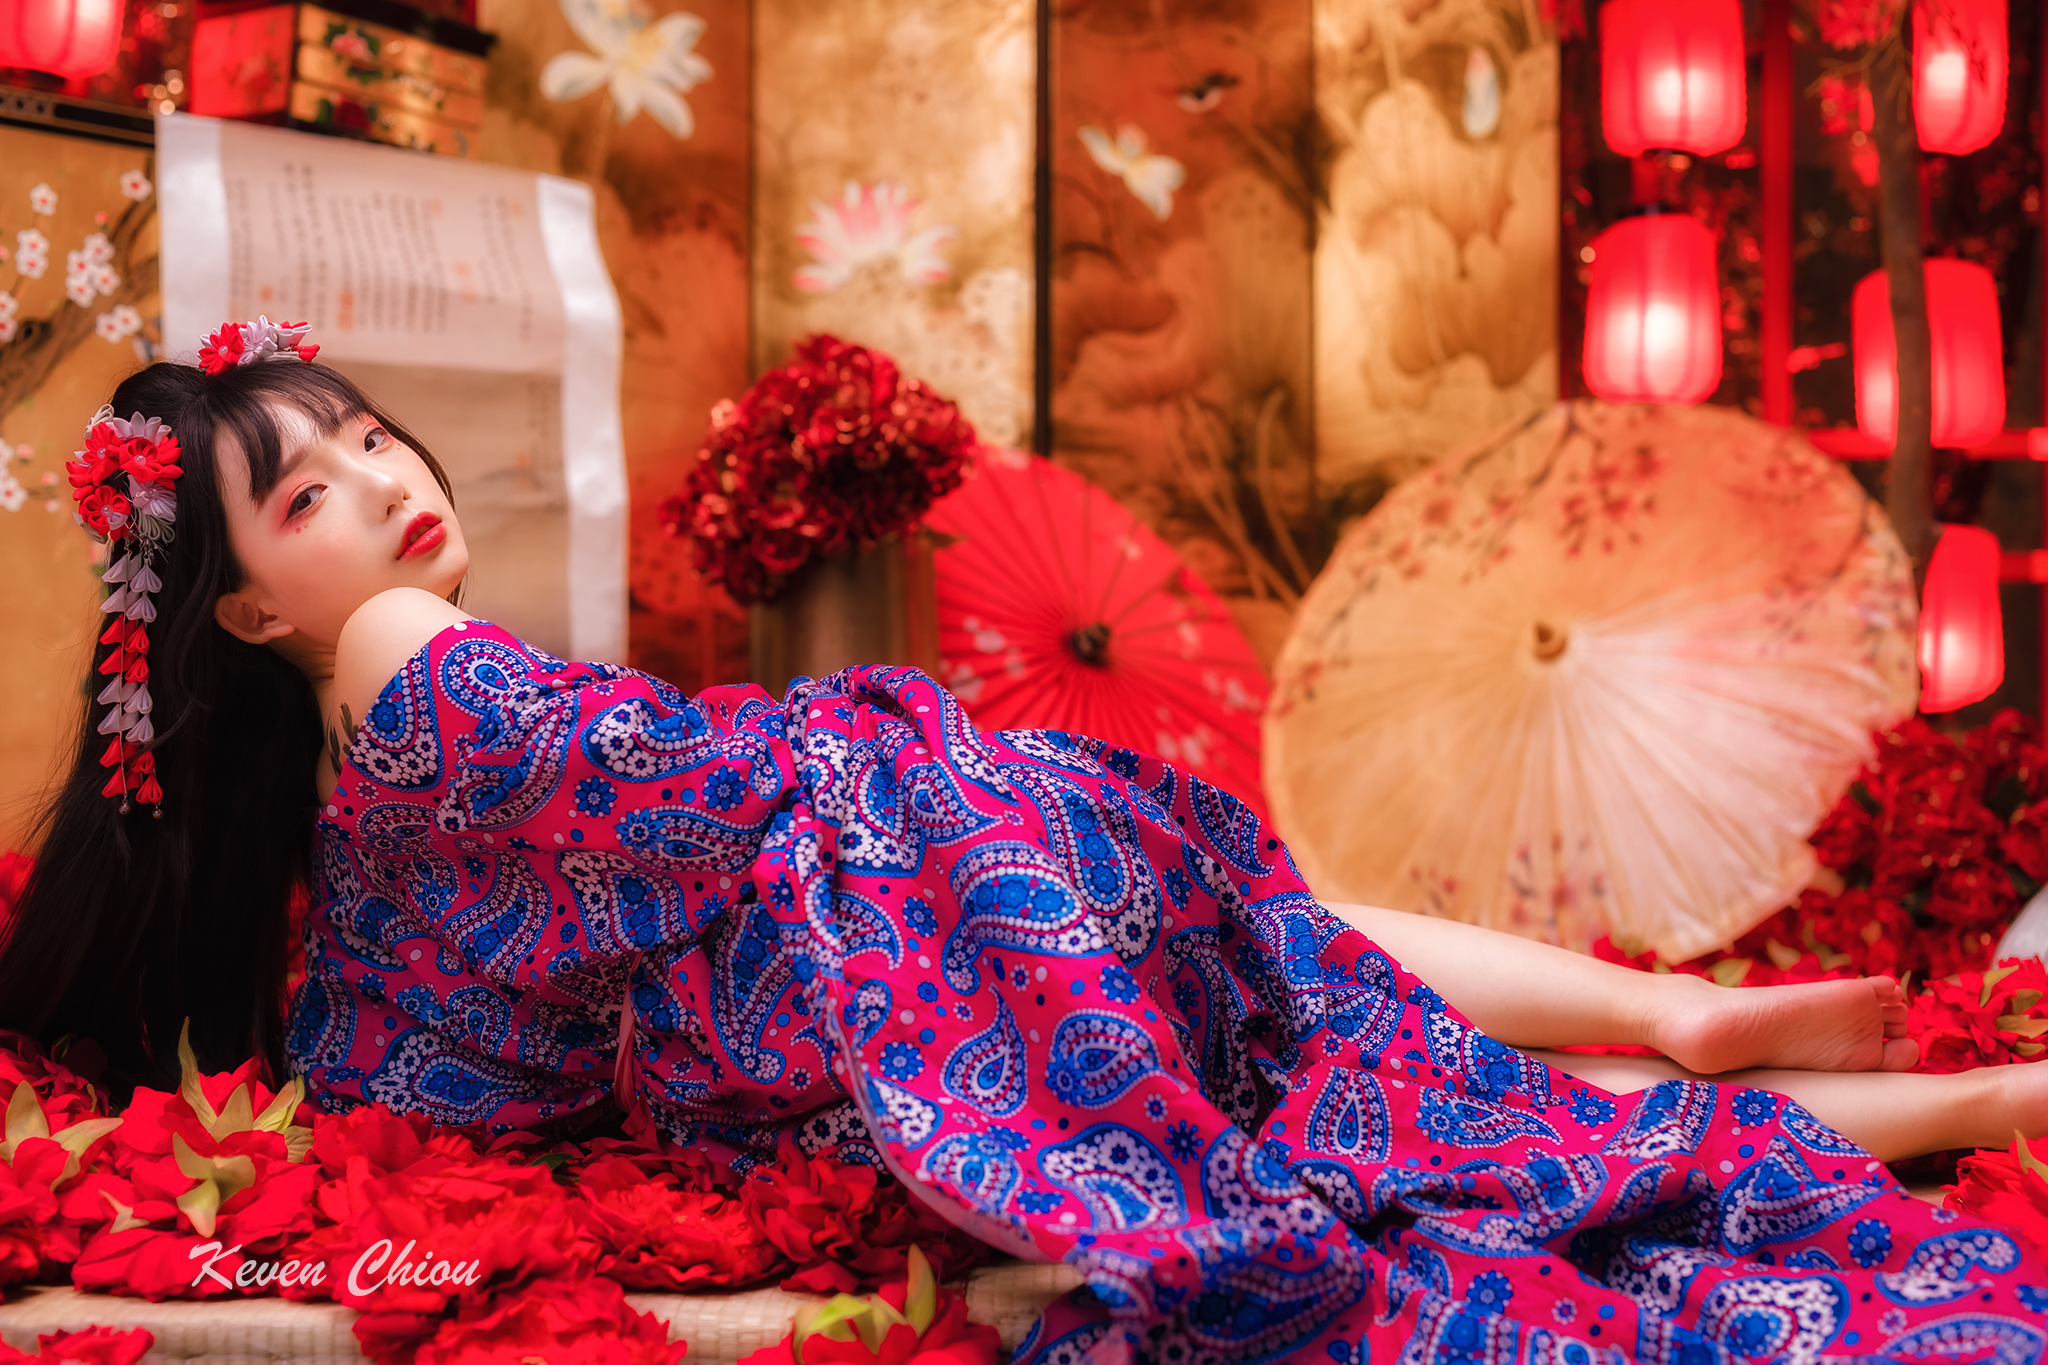 Ning Shioulin Women Model Asian Kimono Geisha Bare Shoulders Women Indoors 2048x1365